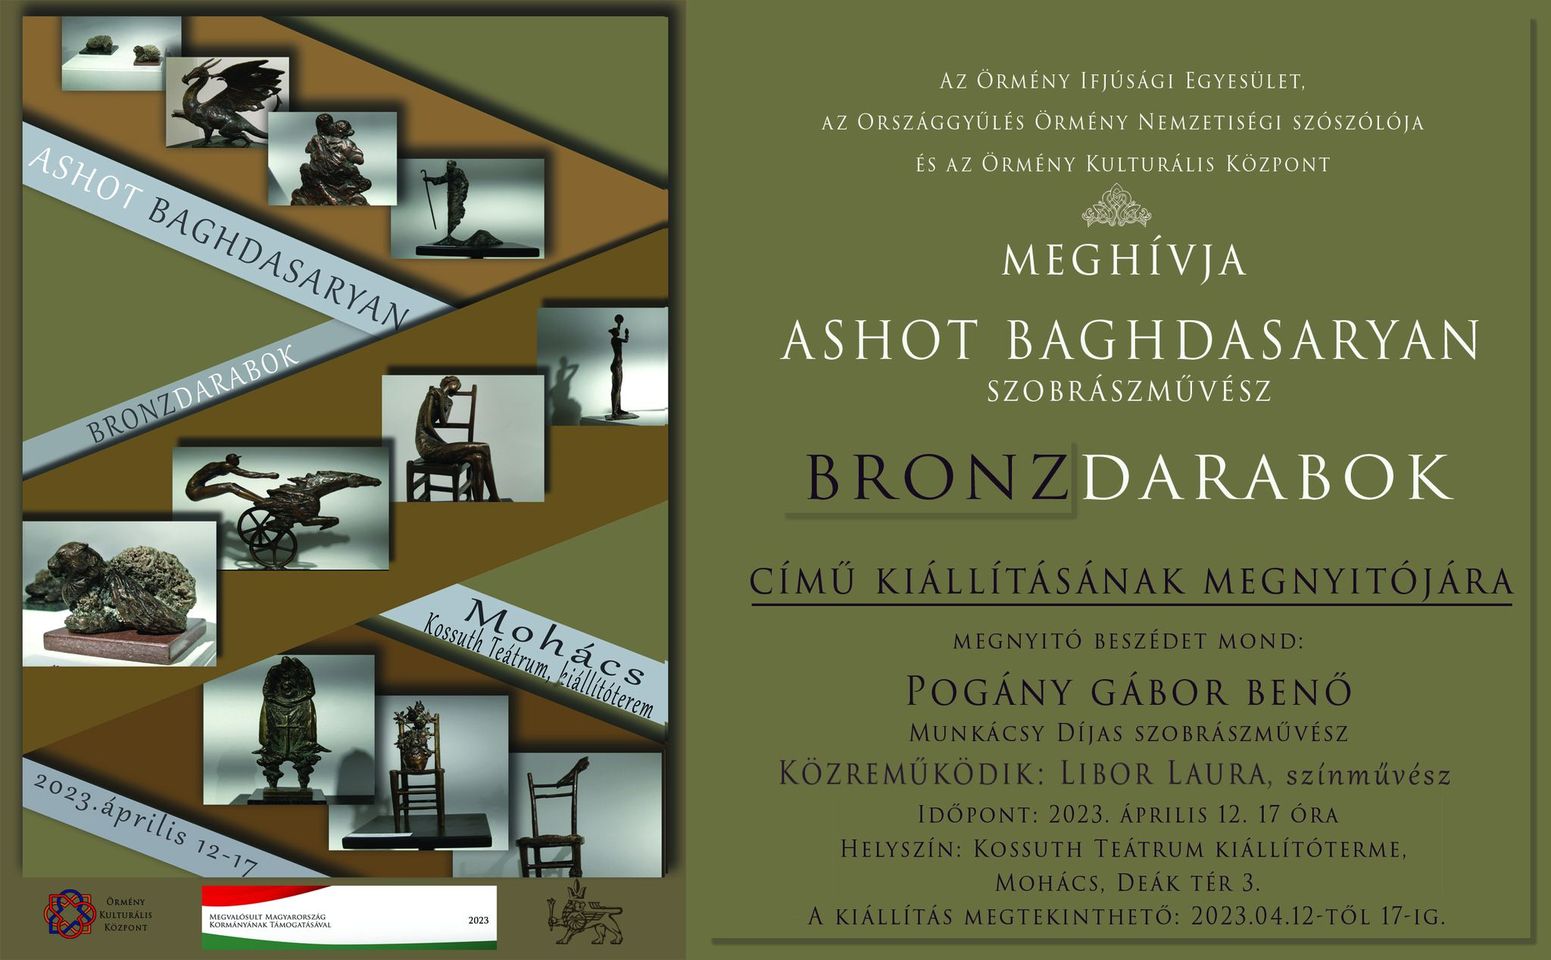 Ashot Bagdasaryan – BronzDarabok kiállítás